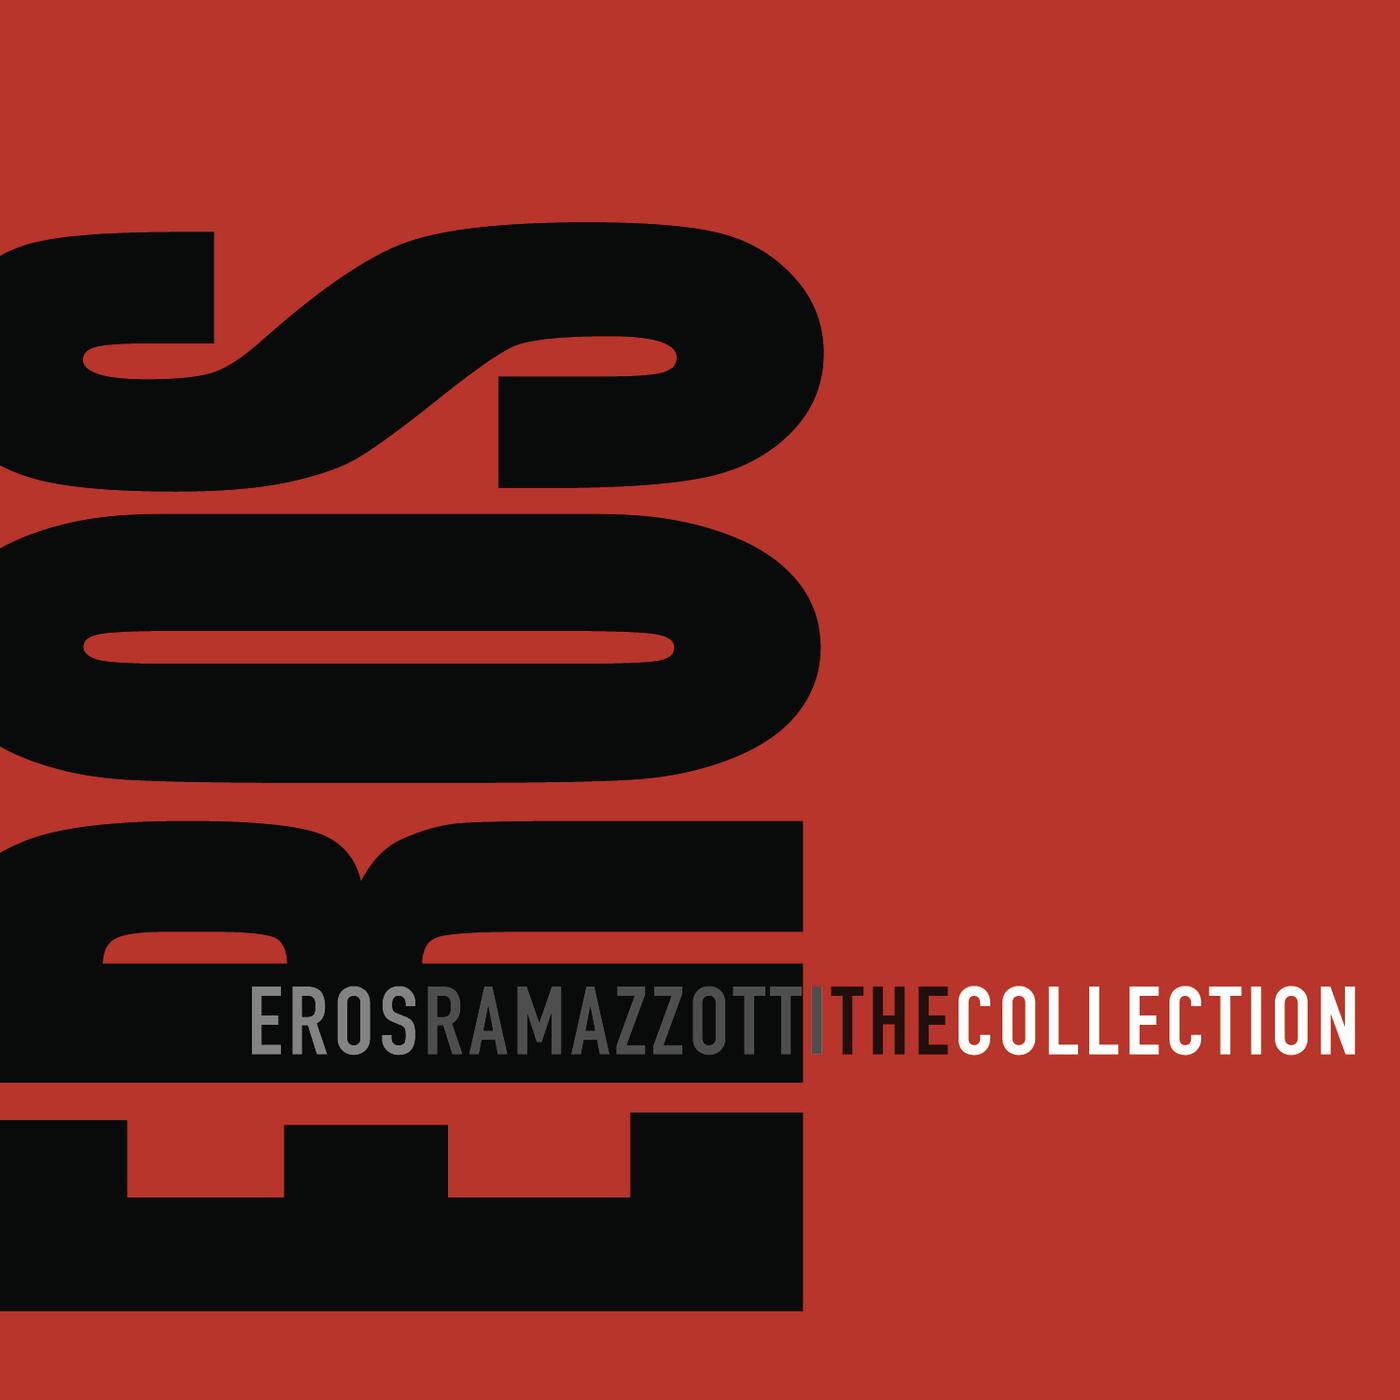 Eros collection. Eros Ramazzotti collection.